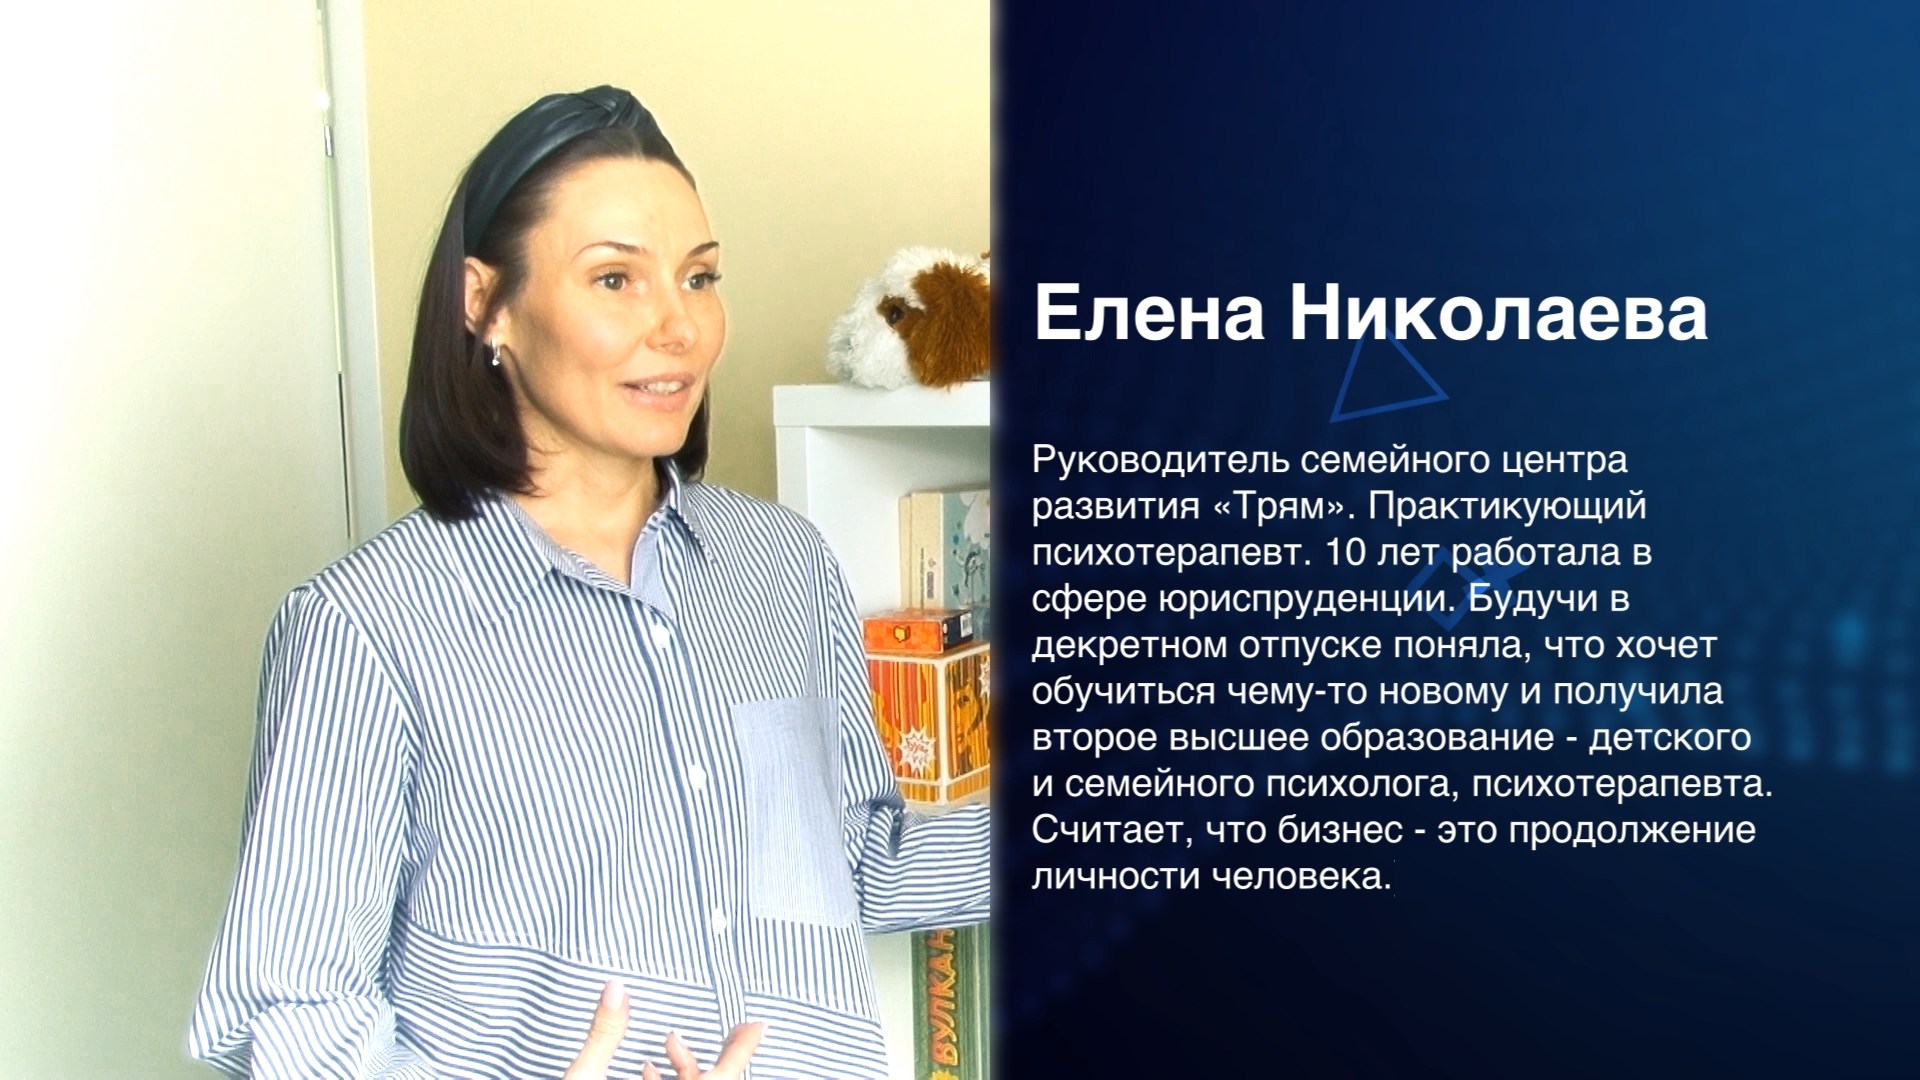 Бизнес-истории. История Елены Николаевой